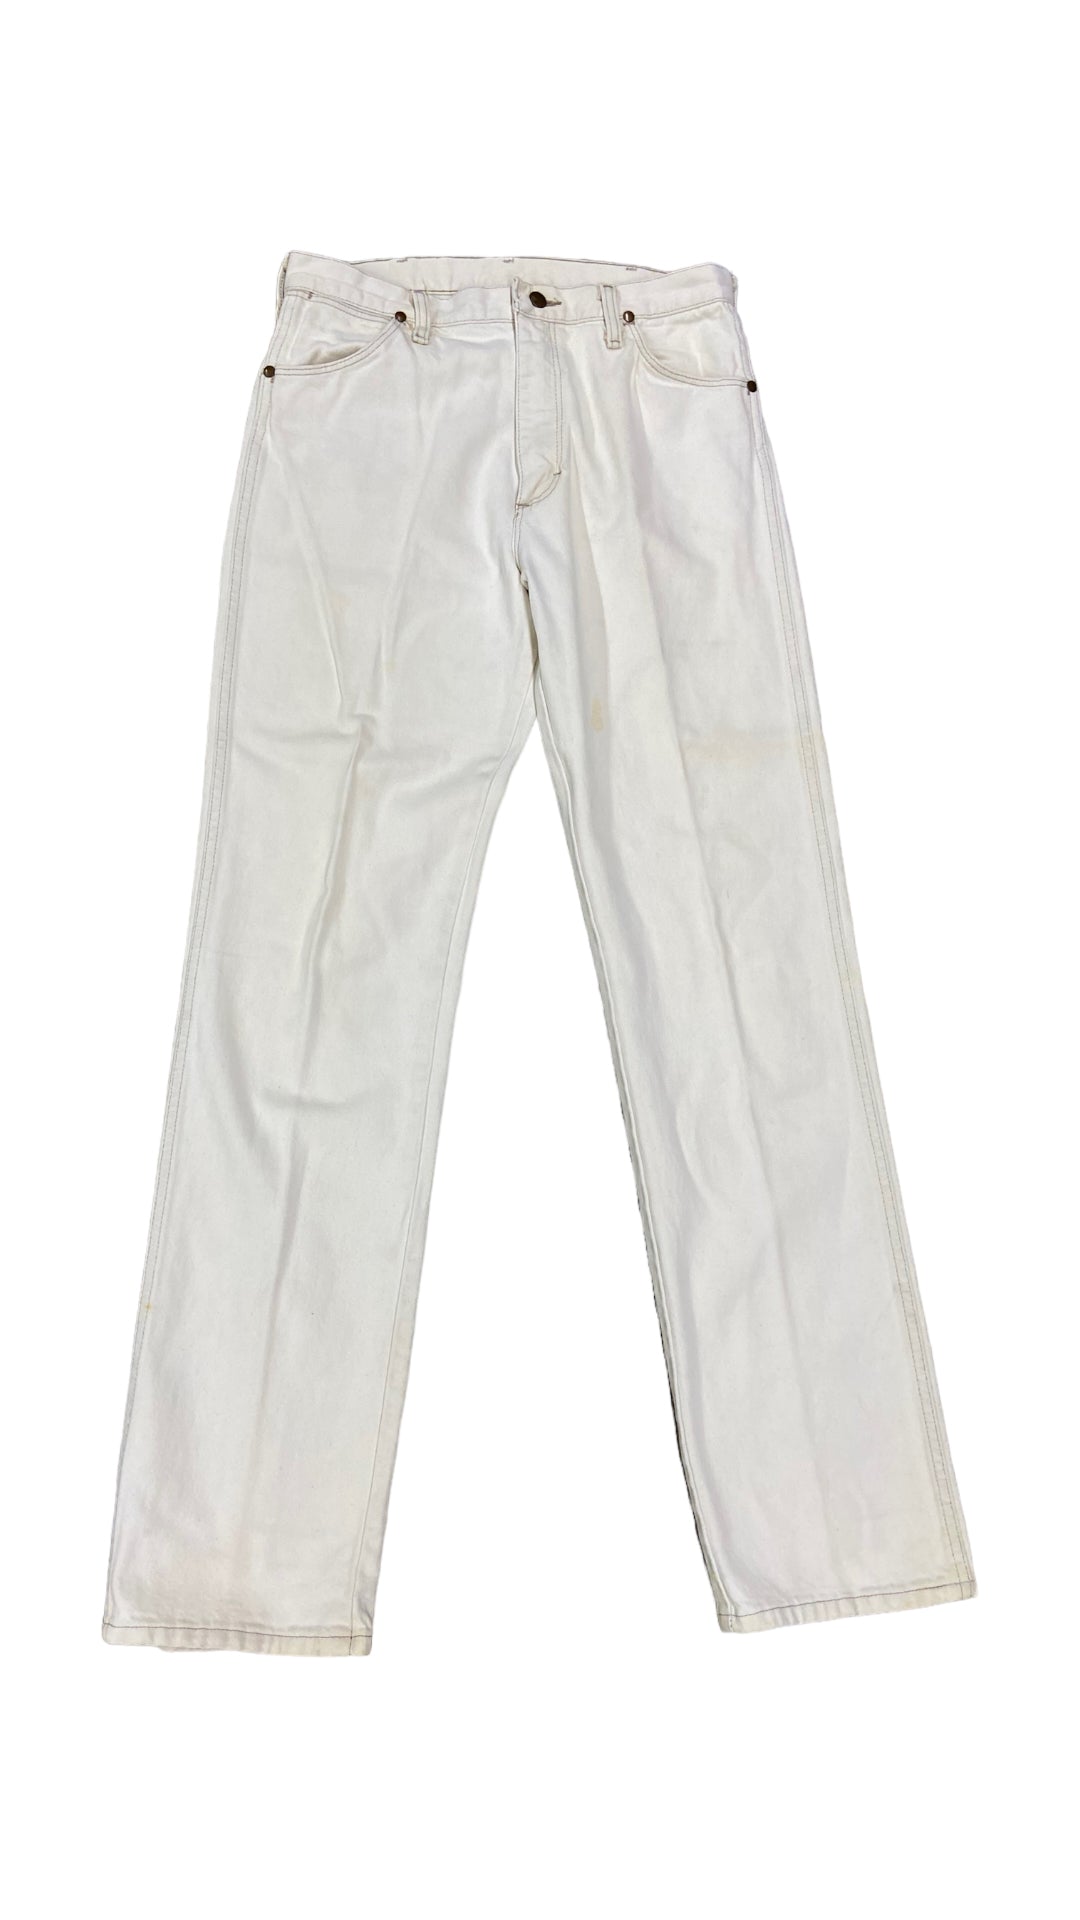 VTG Wrangler Cream Long Jeans Sz 32x34